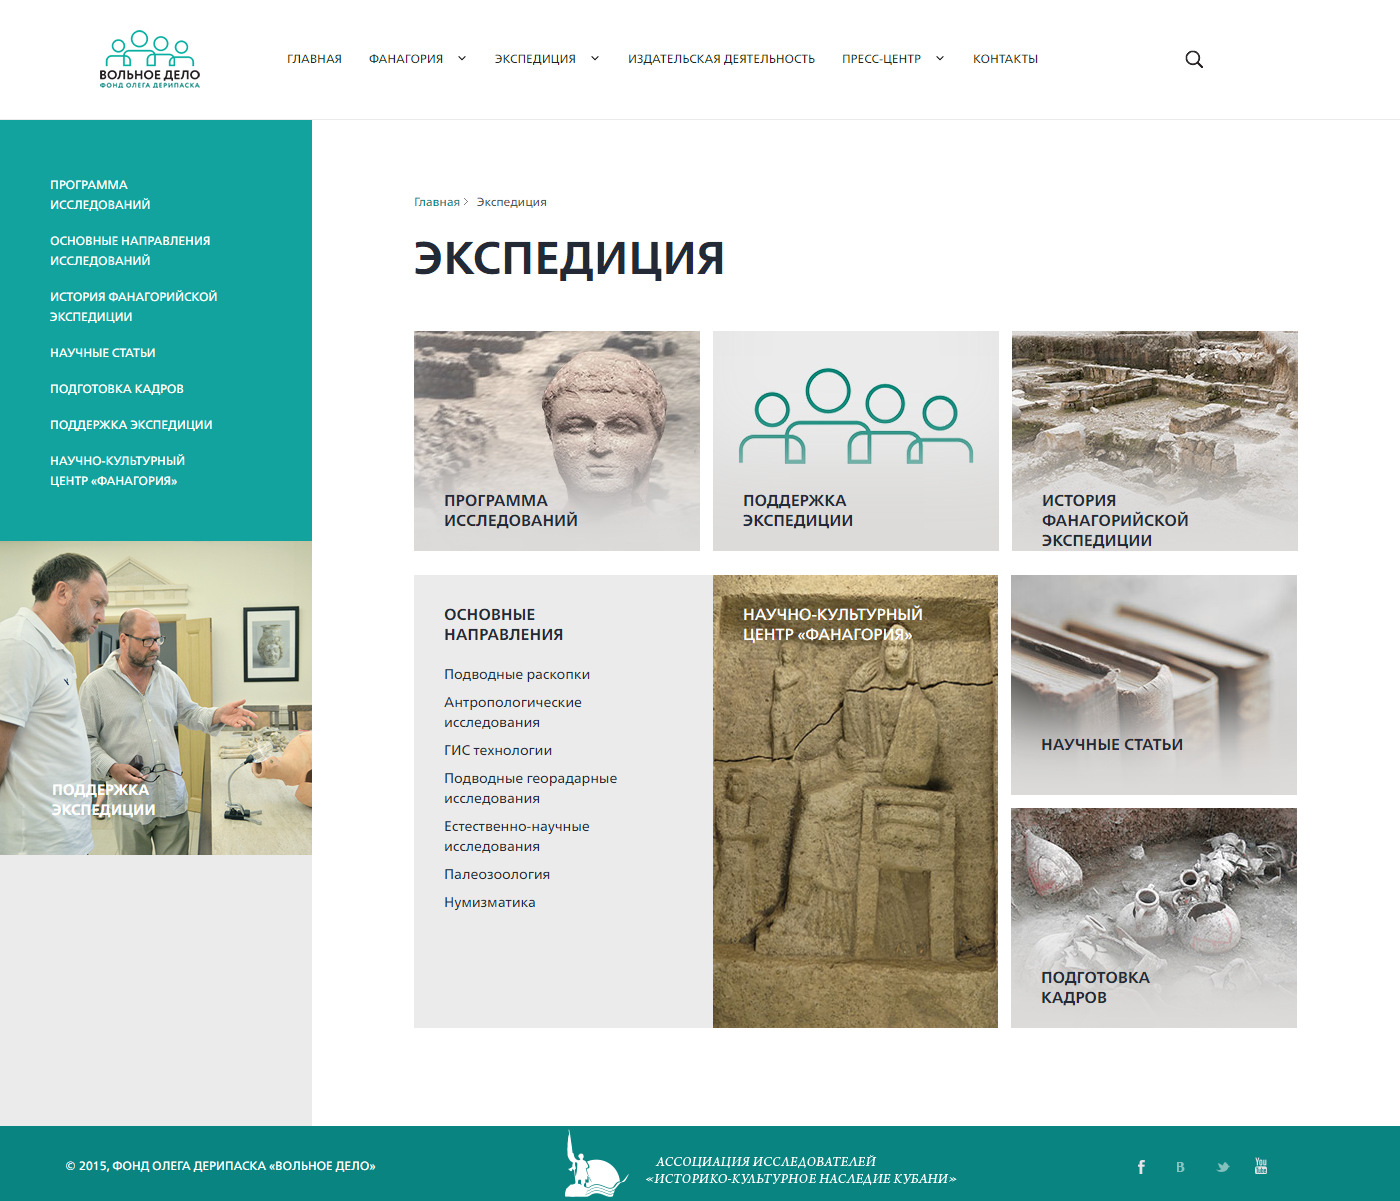 сайт научно-культурного центра «фанагория»